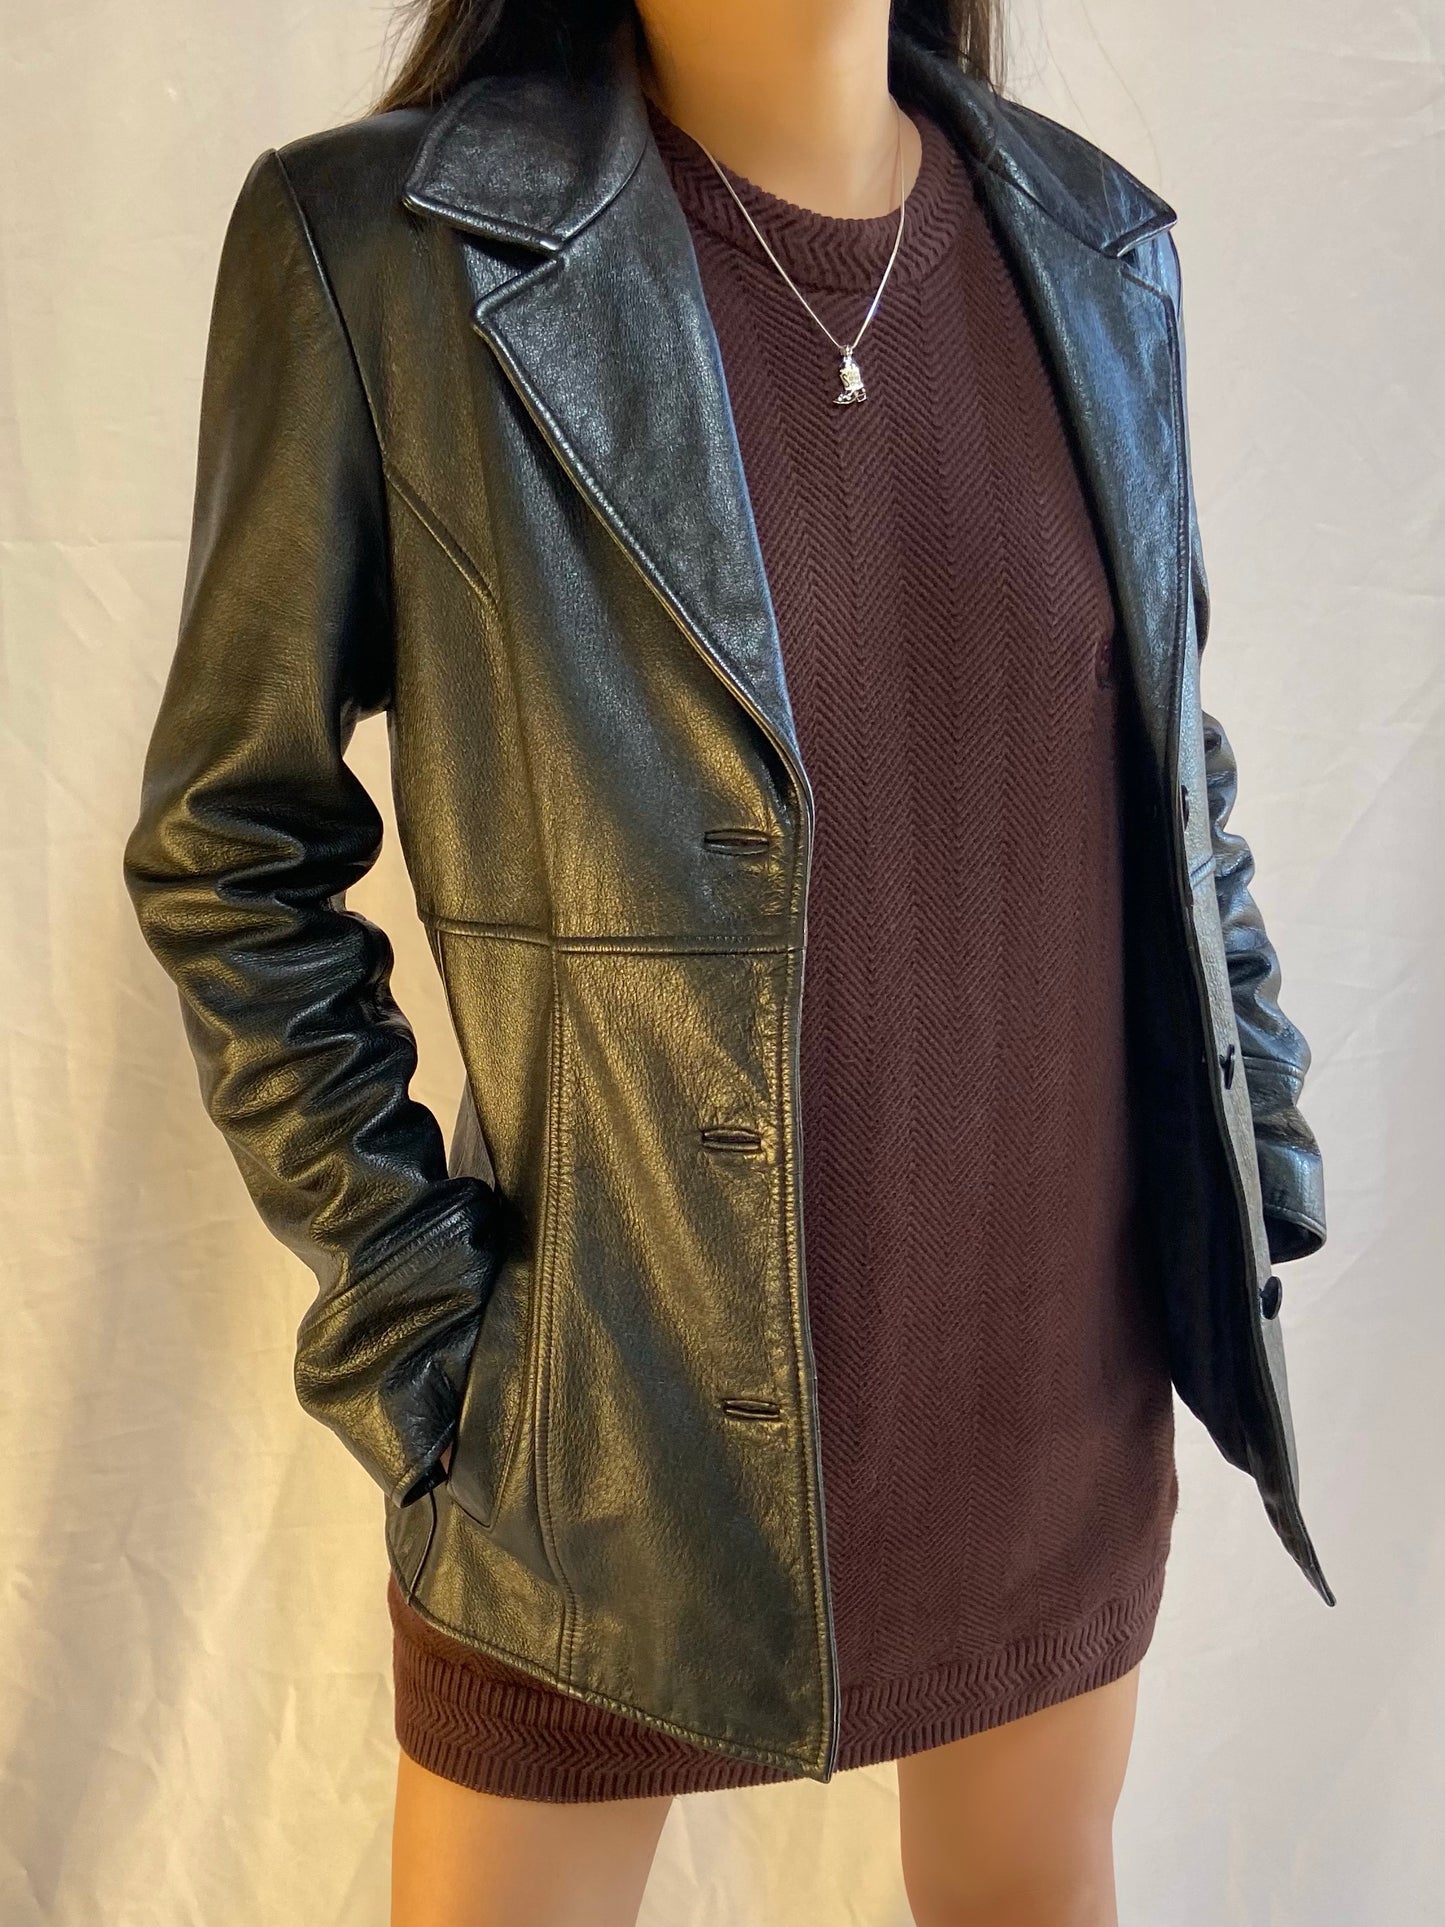 Black Wilsons Leather Jacket - Medium